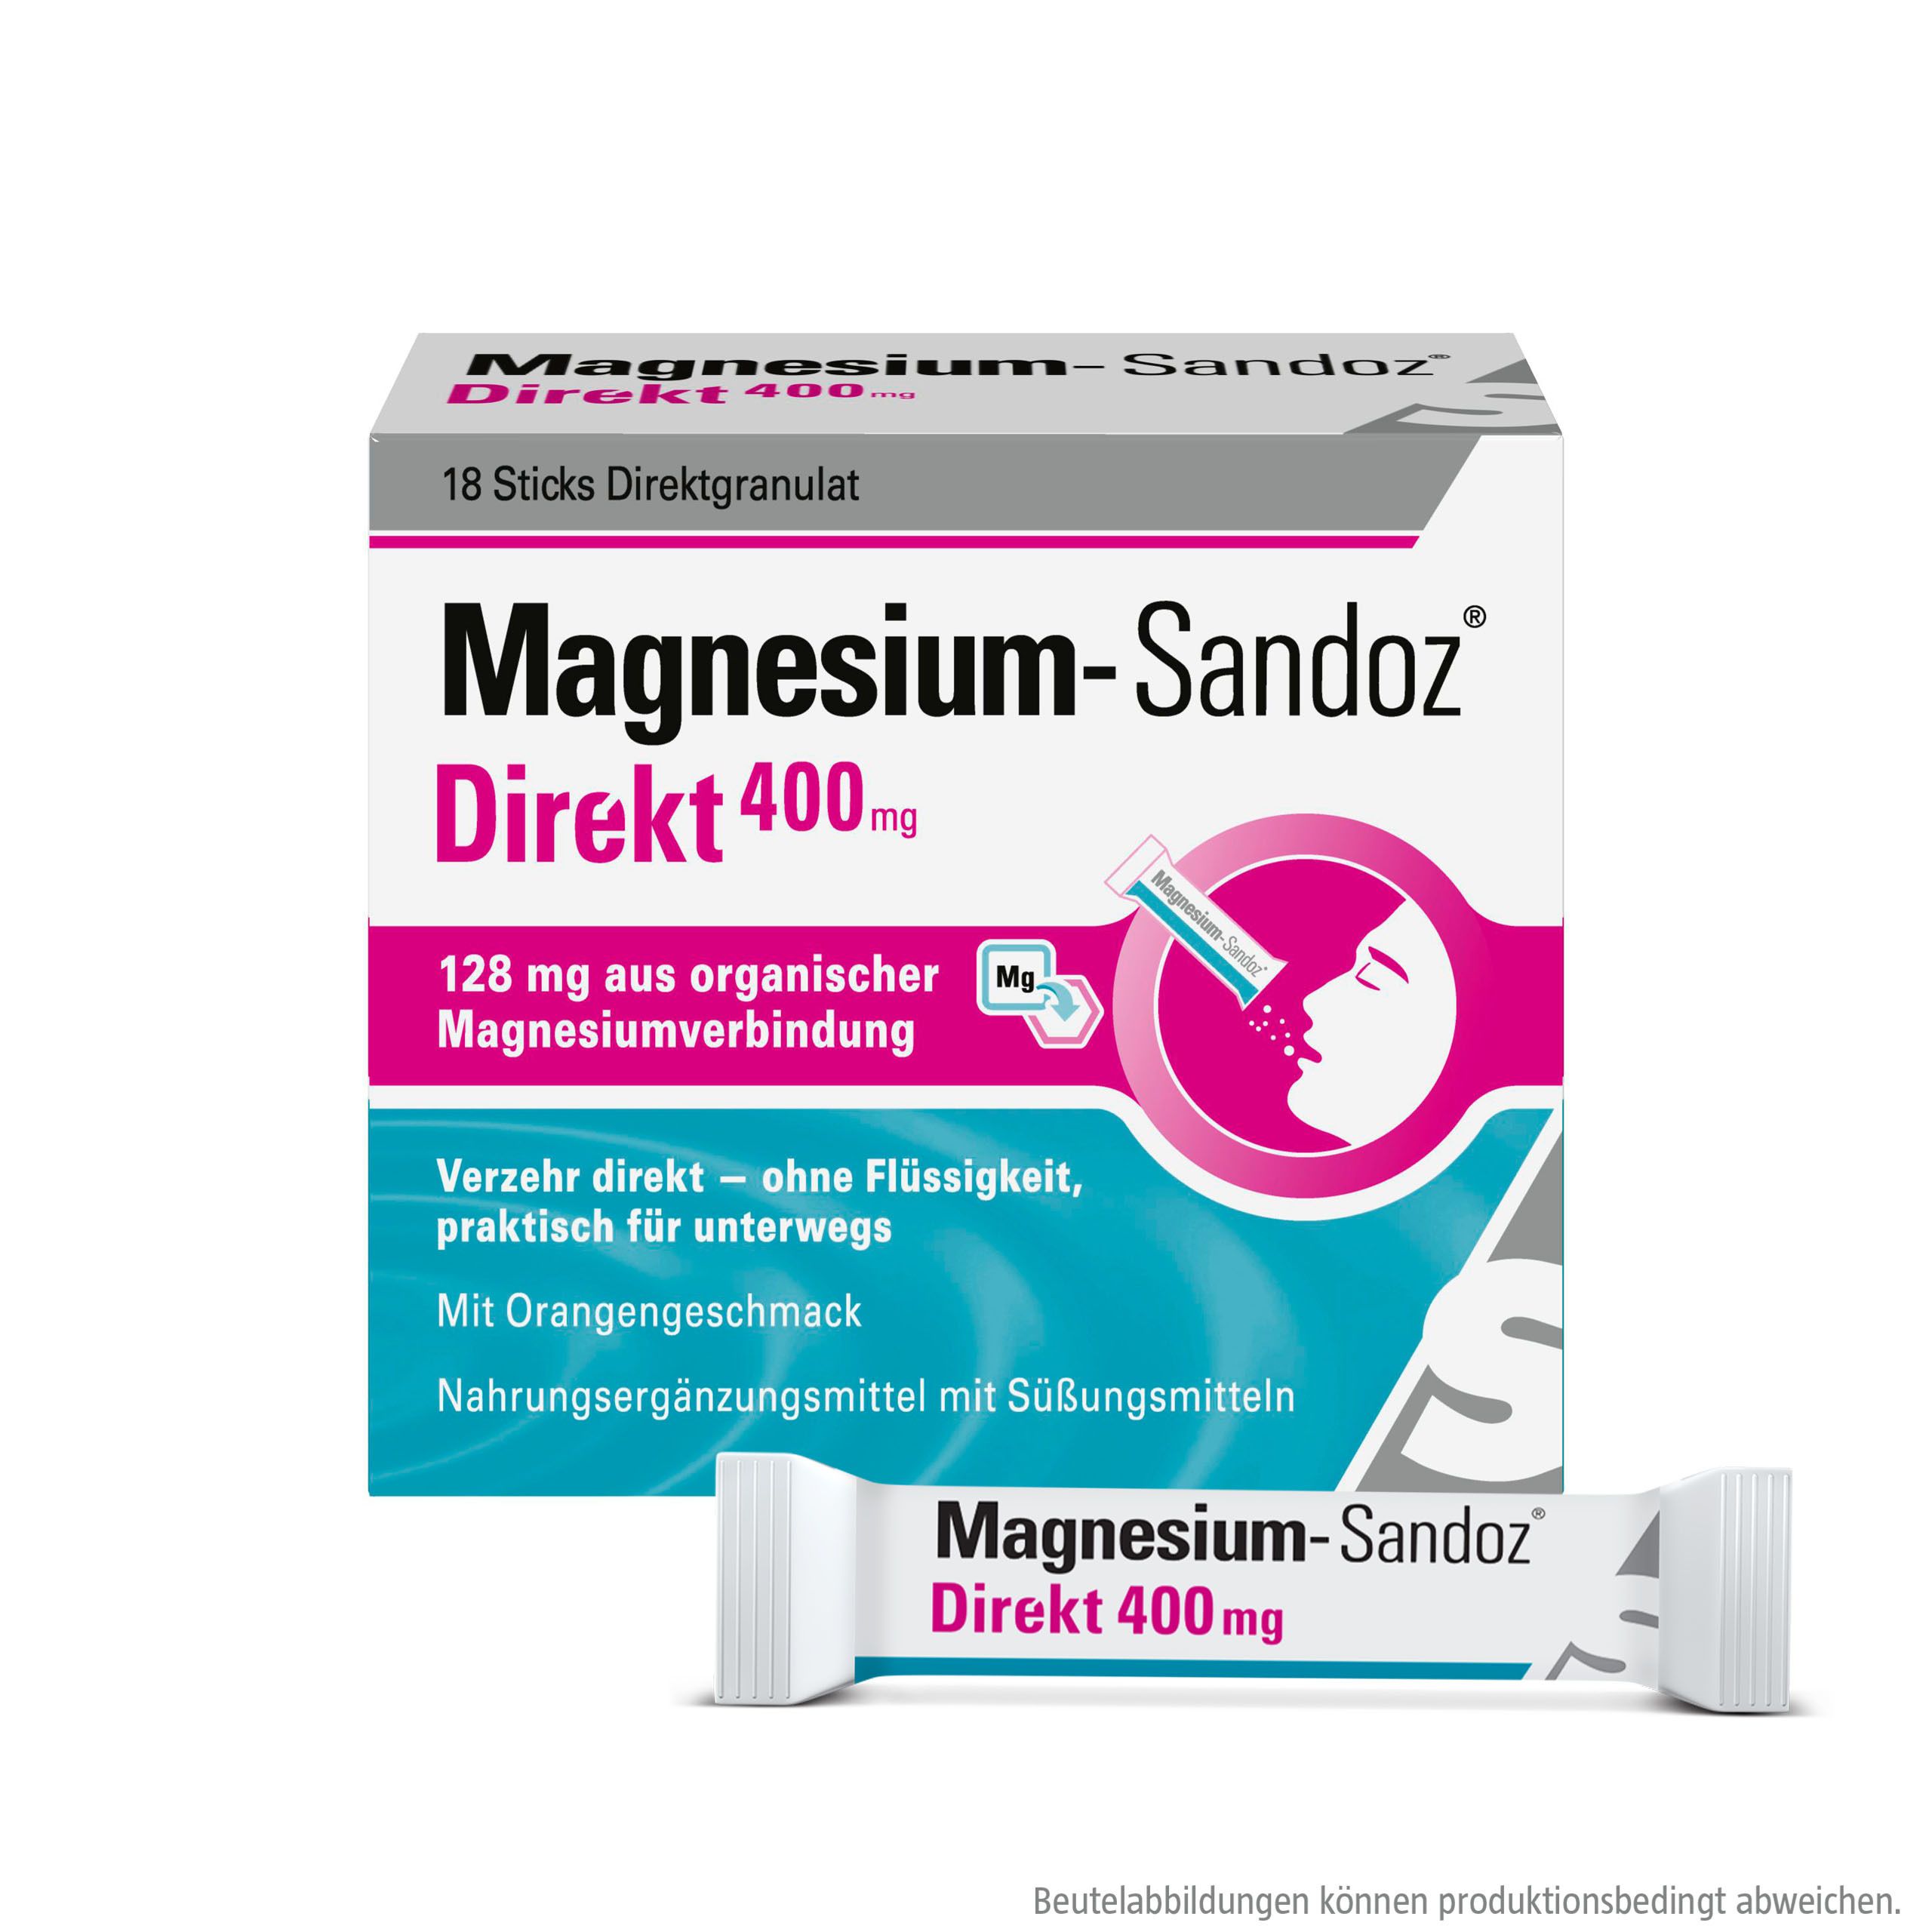 Magnesium-Sandoz® Direkt 400 mg